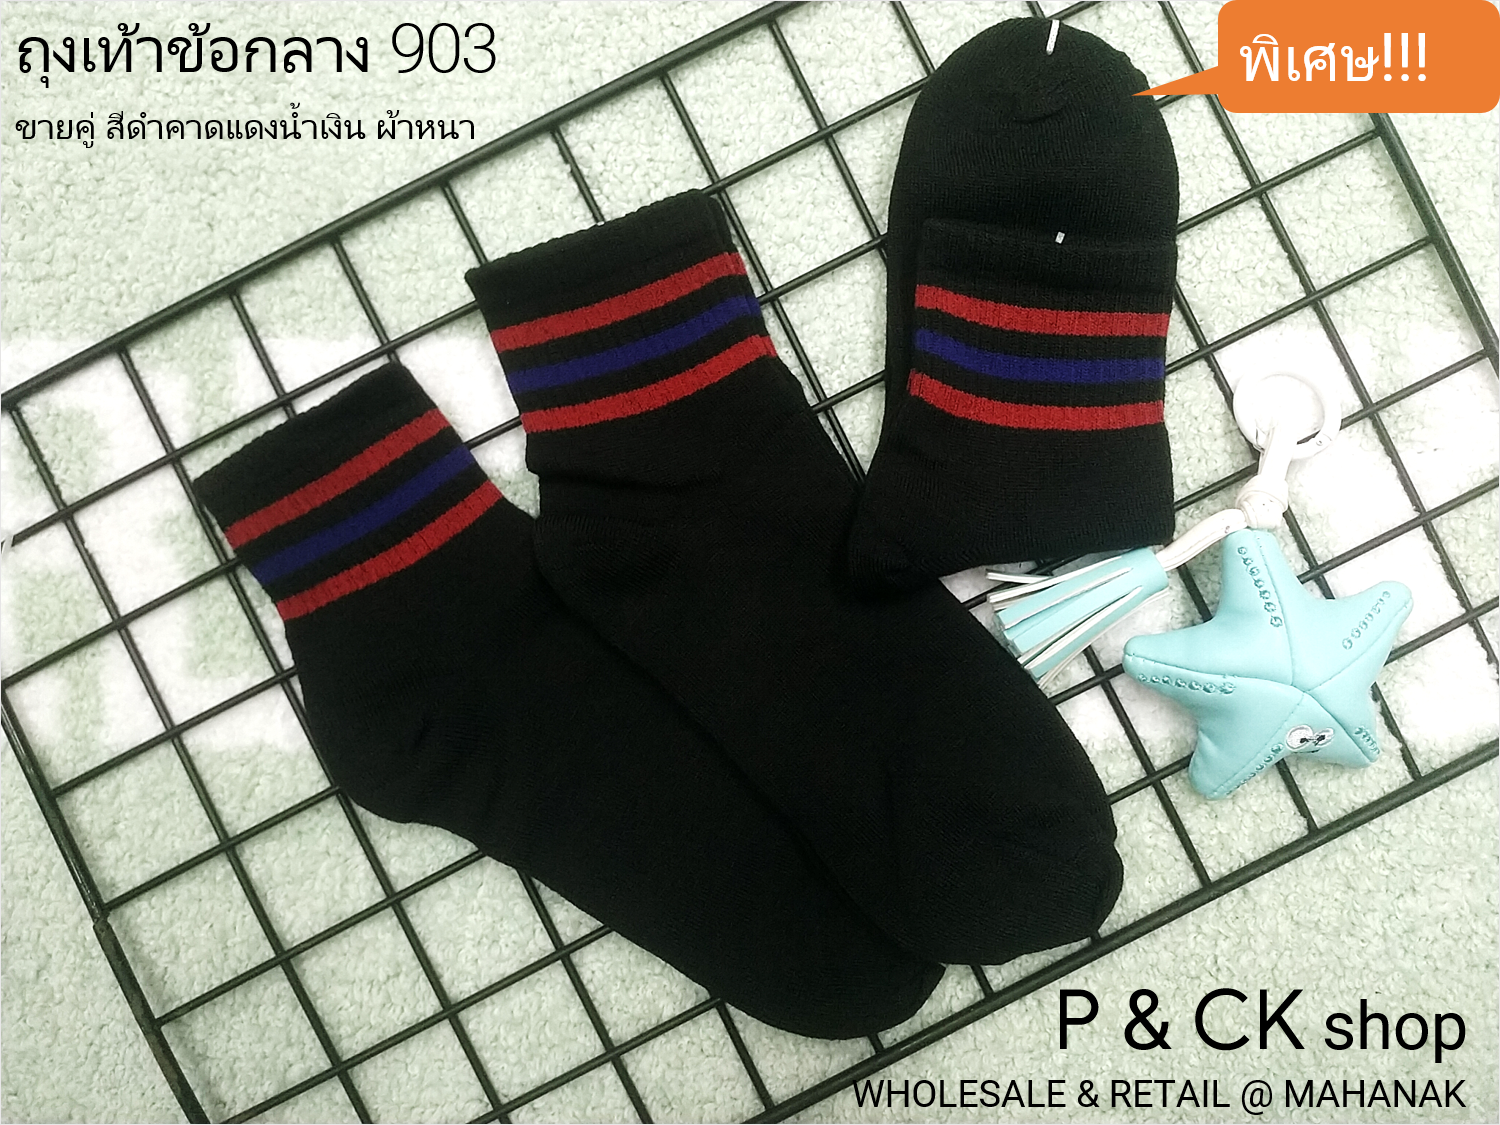 P & CK / #902 (5) ถุงเท้าผู้ชายแฟชั่นข้อยาวฟรีไซส์ (คอตตอน 80%): [ขายเป็นคู่, คละสีเป็นแพ็คก็ได้] เลือกได้ 3 สี, ราคาพิเศษ